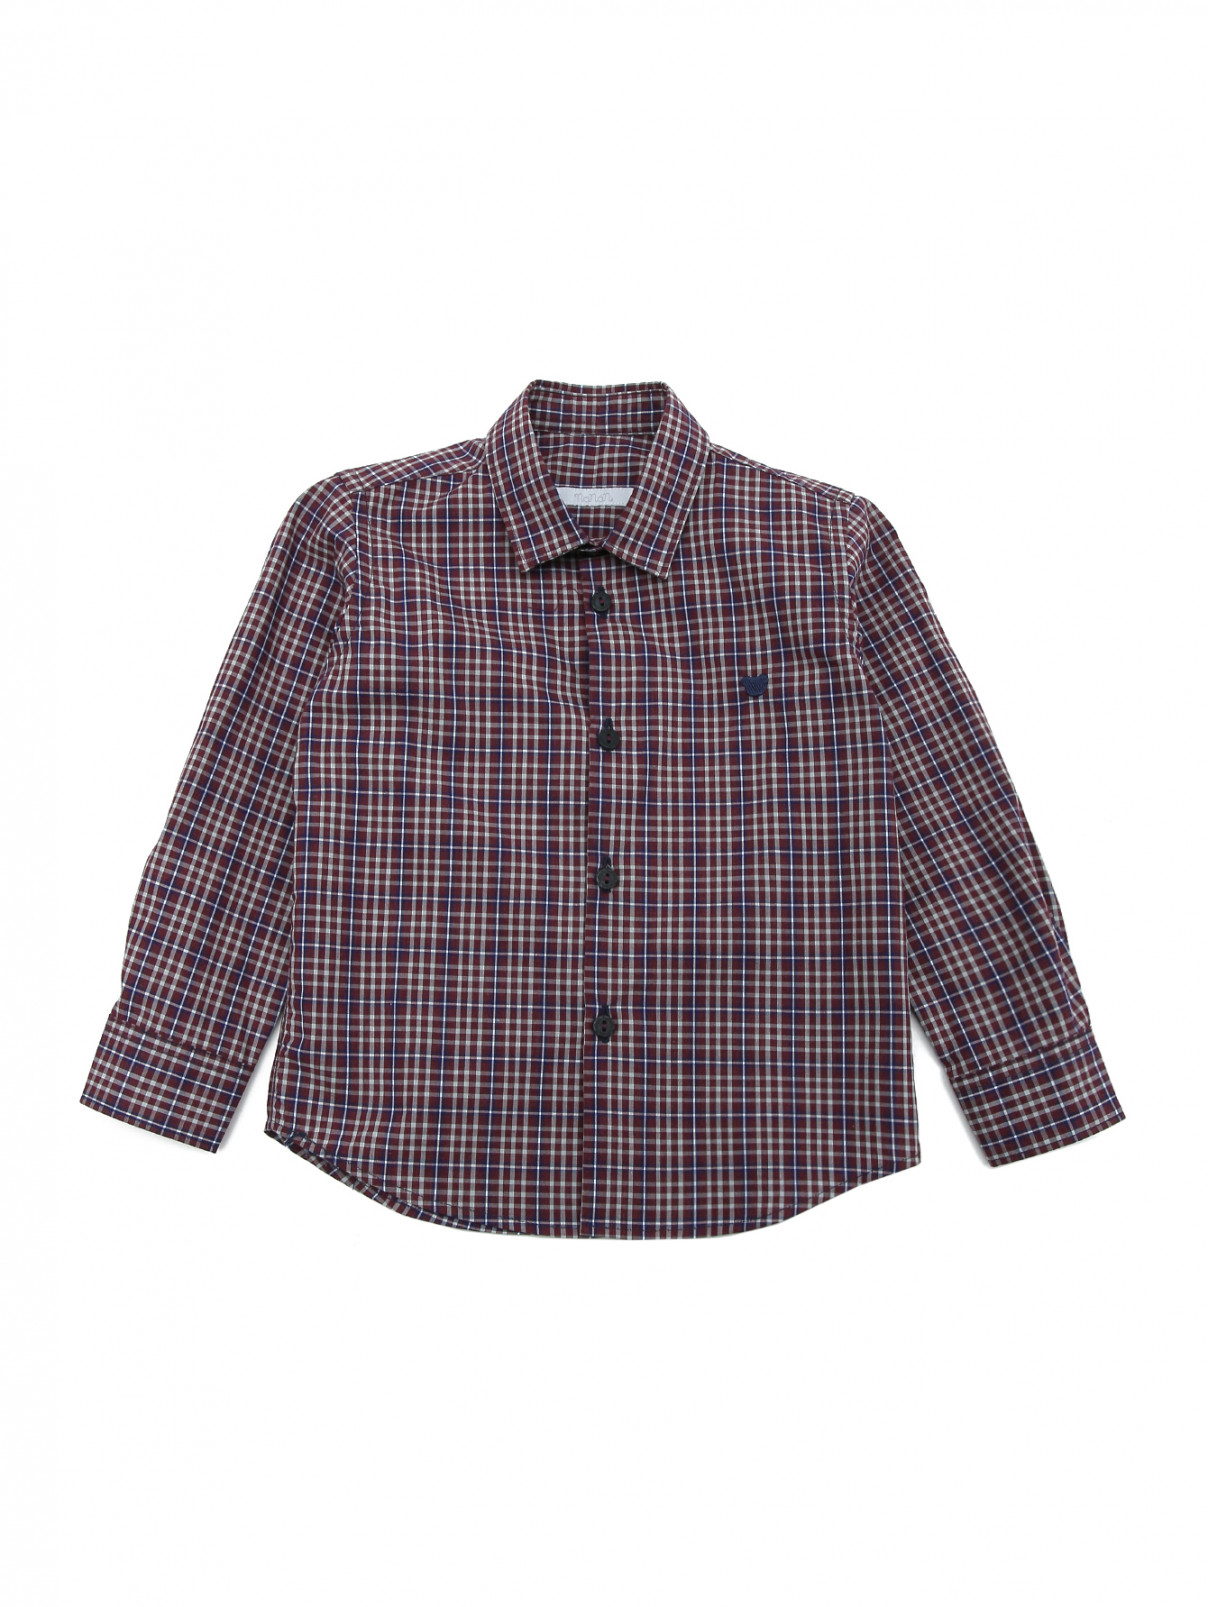 Рубашка хлопковая в клетку Nanan  –  Общий вид  – Цвет:  Фиолетовый